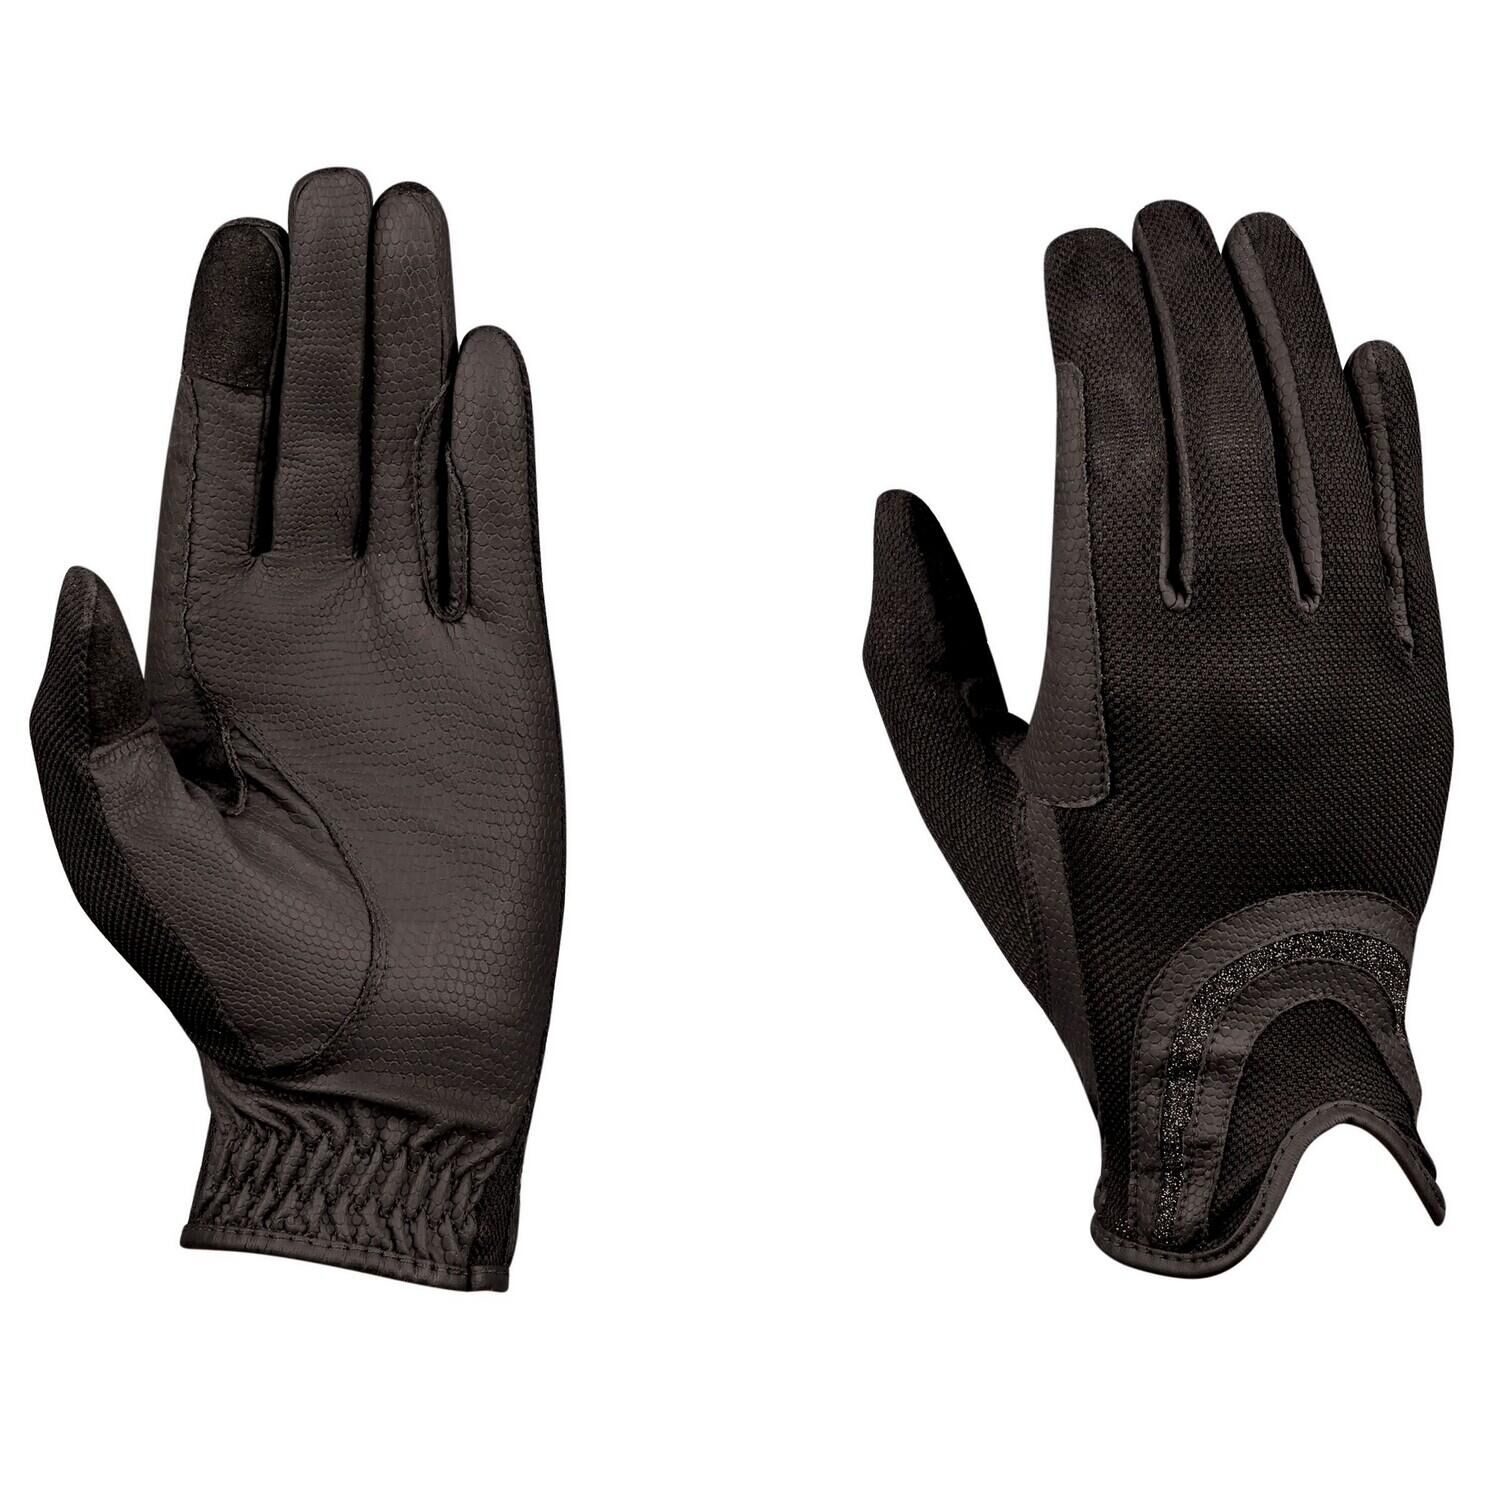 DUBLIN Mesh Palm Goat Leather Glitter Riding Gloves (Black)